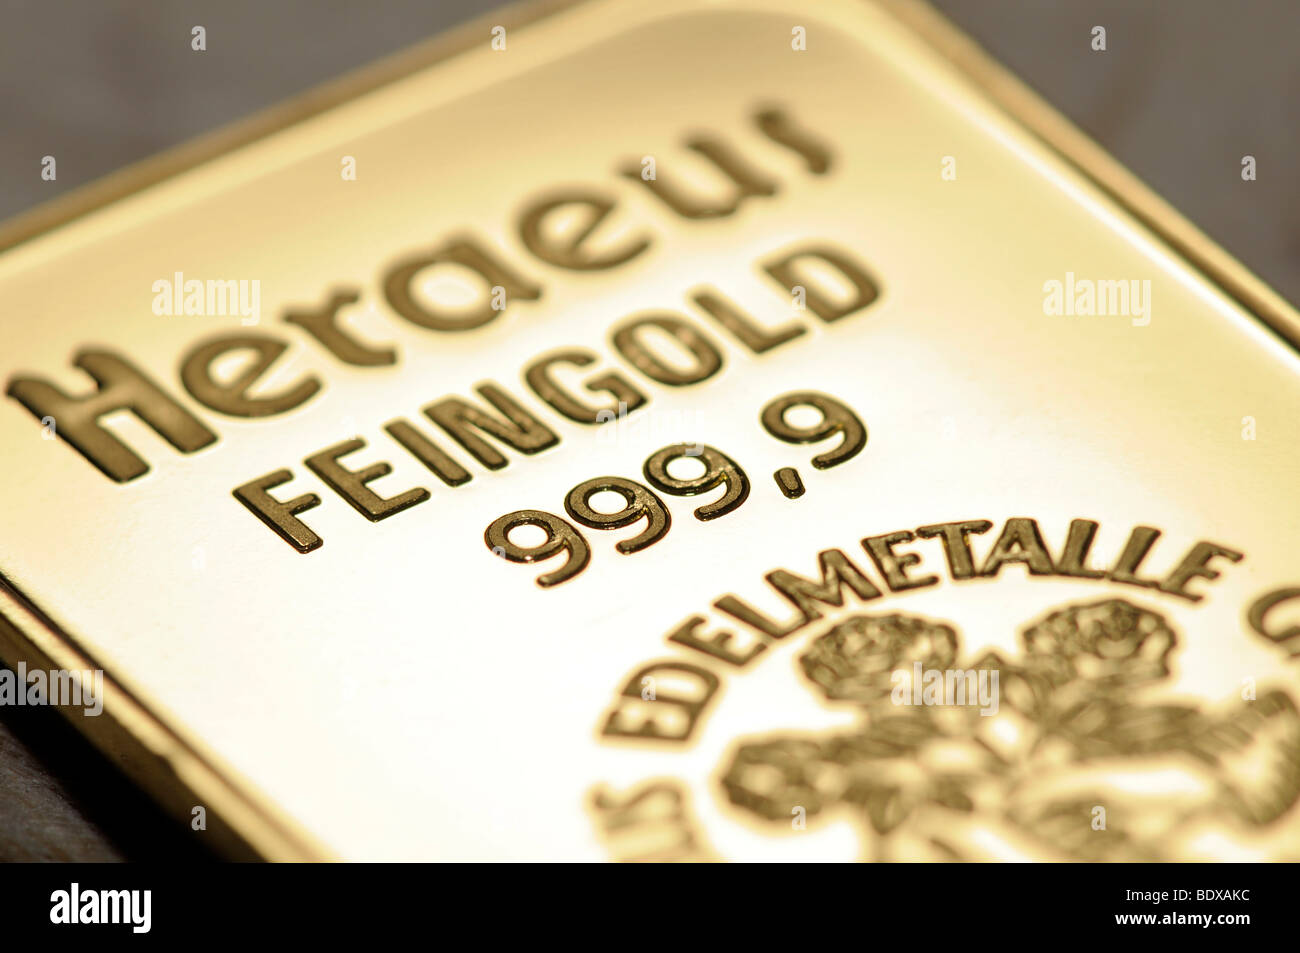 20 gram gold bars, Feingold 999.9, detail, macro Stock Photo